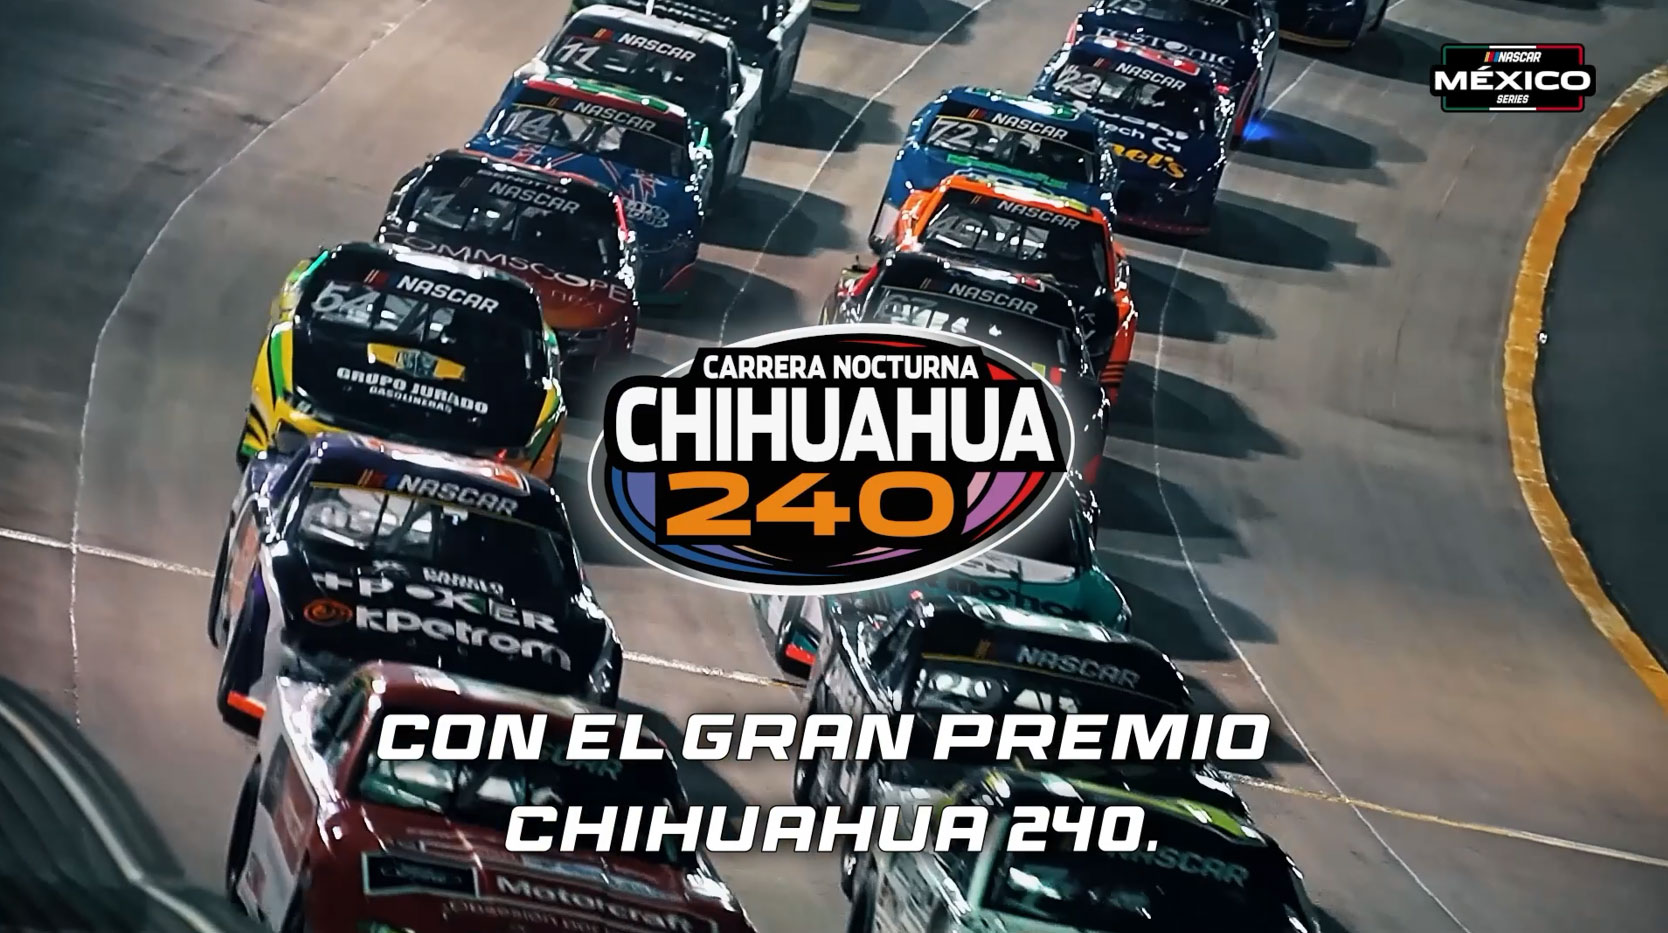 VIDEO SOBRE LA CARRERA NOCTURNA GRAN PREMIO CHIHUAHUA 240